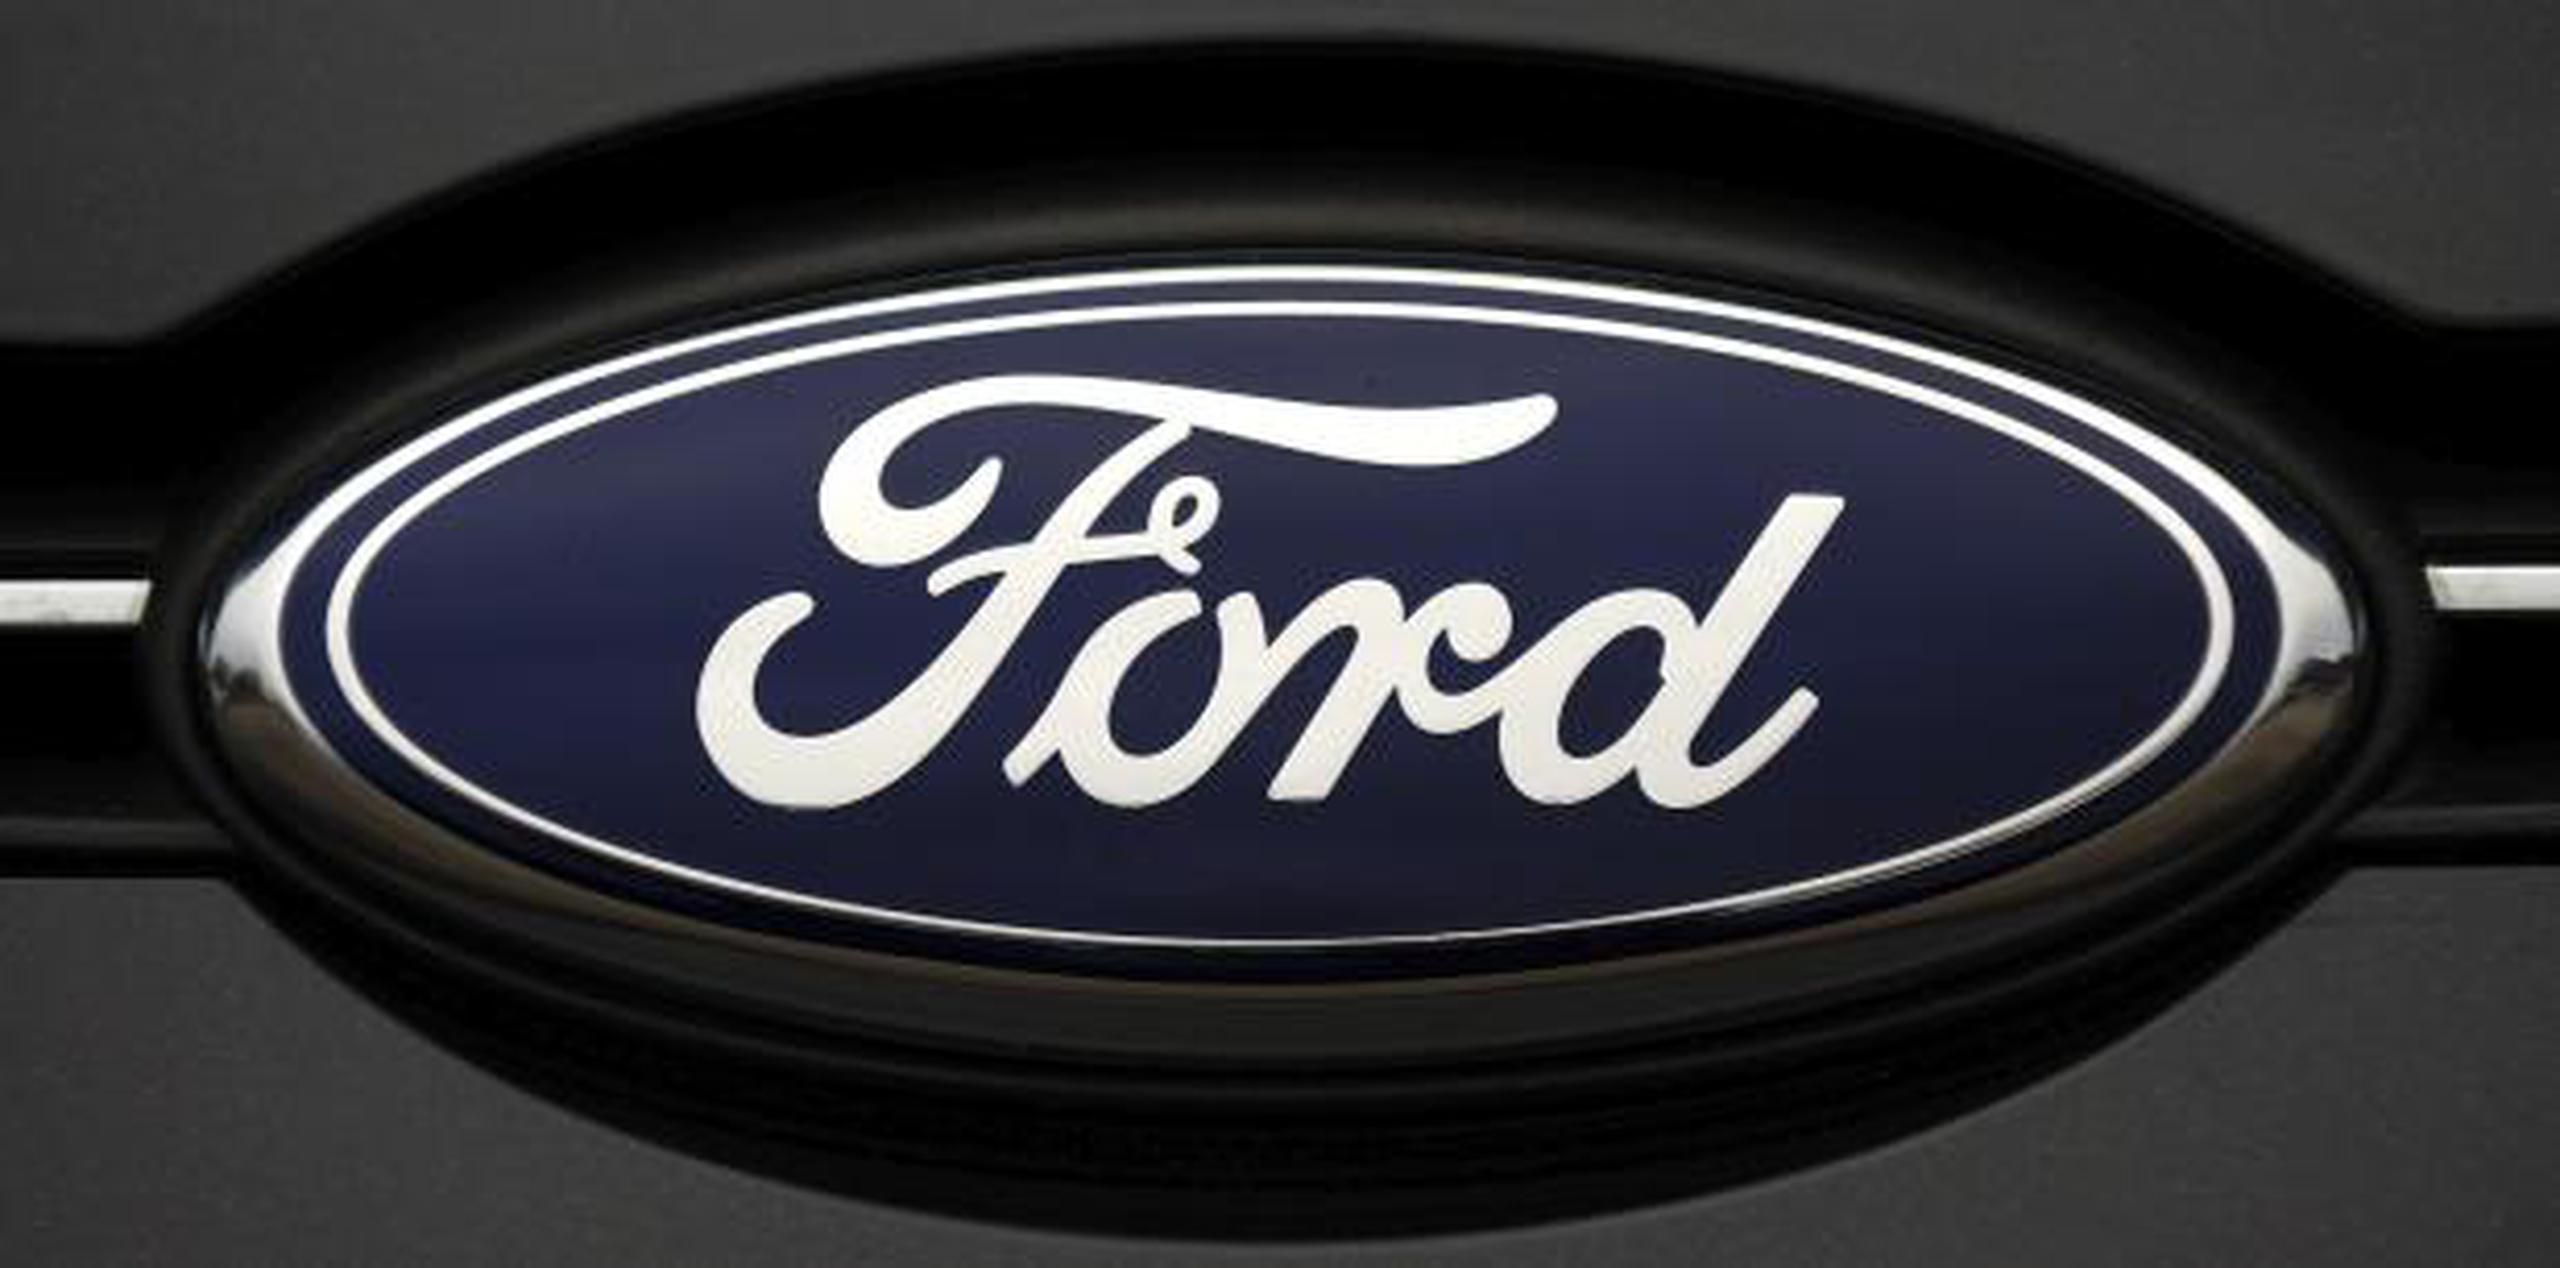 El plan de Ford busca mejorar la "rentabilidad a corto plazo" y un "negocio más competitivo para el futuro". (EFE)